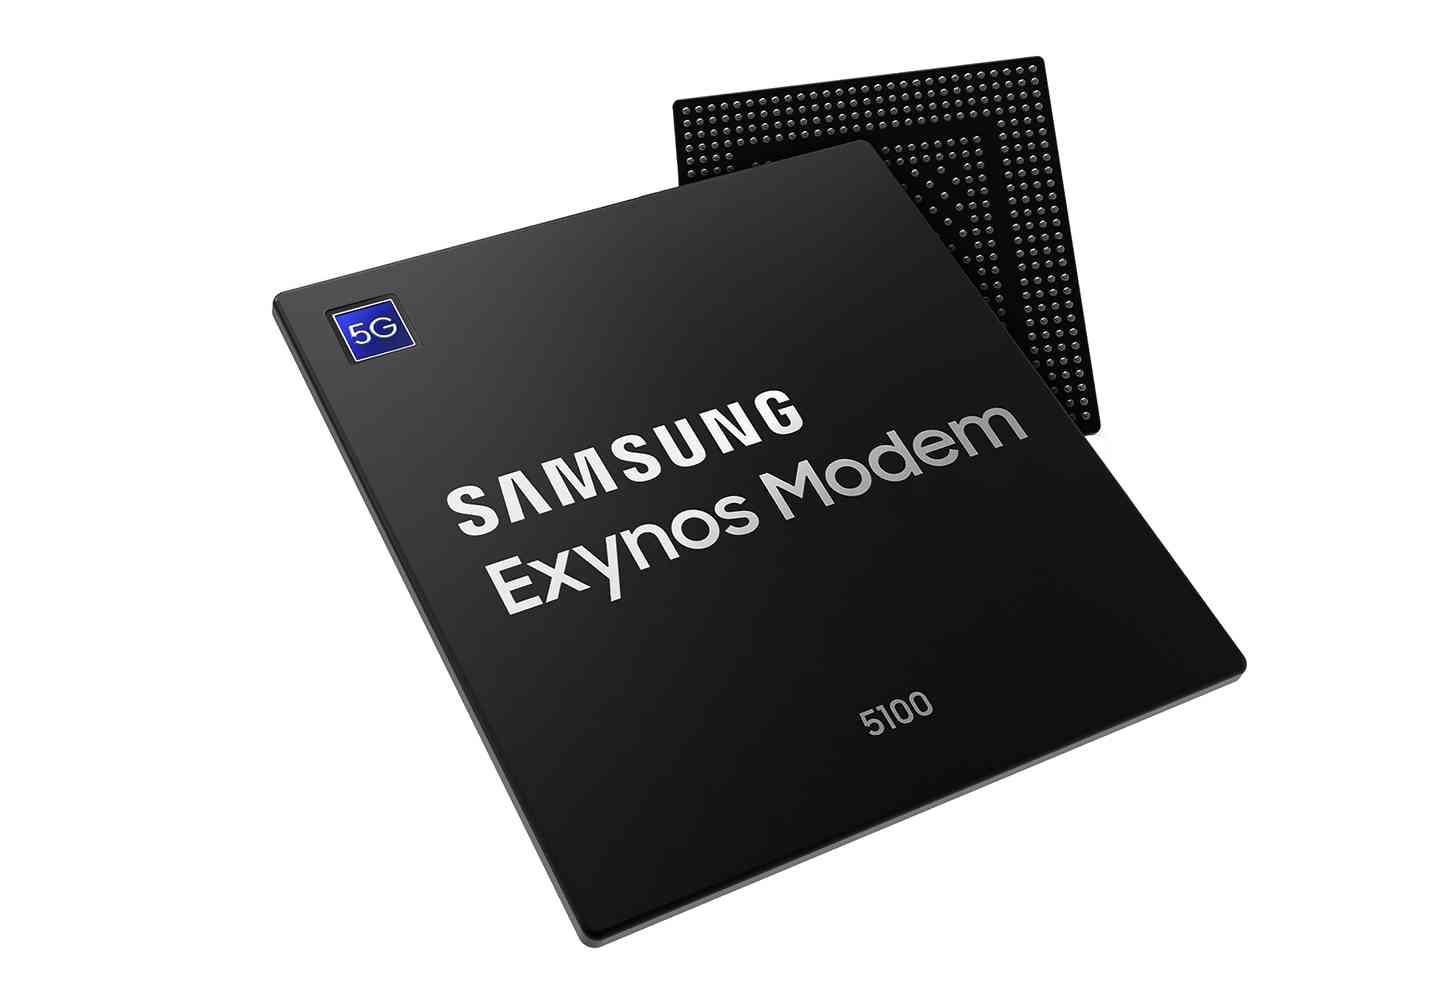 Samsung Exynos Modem 5100 5G official